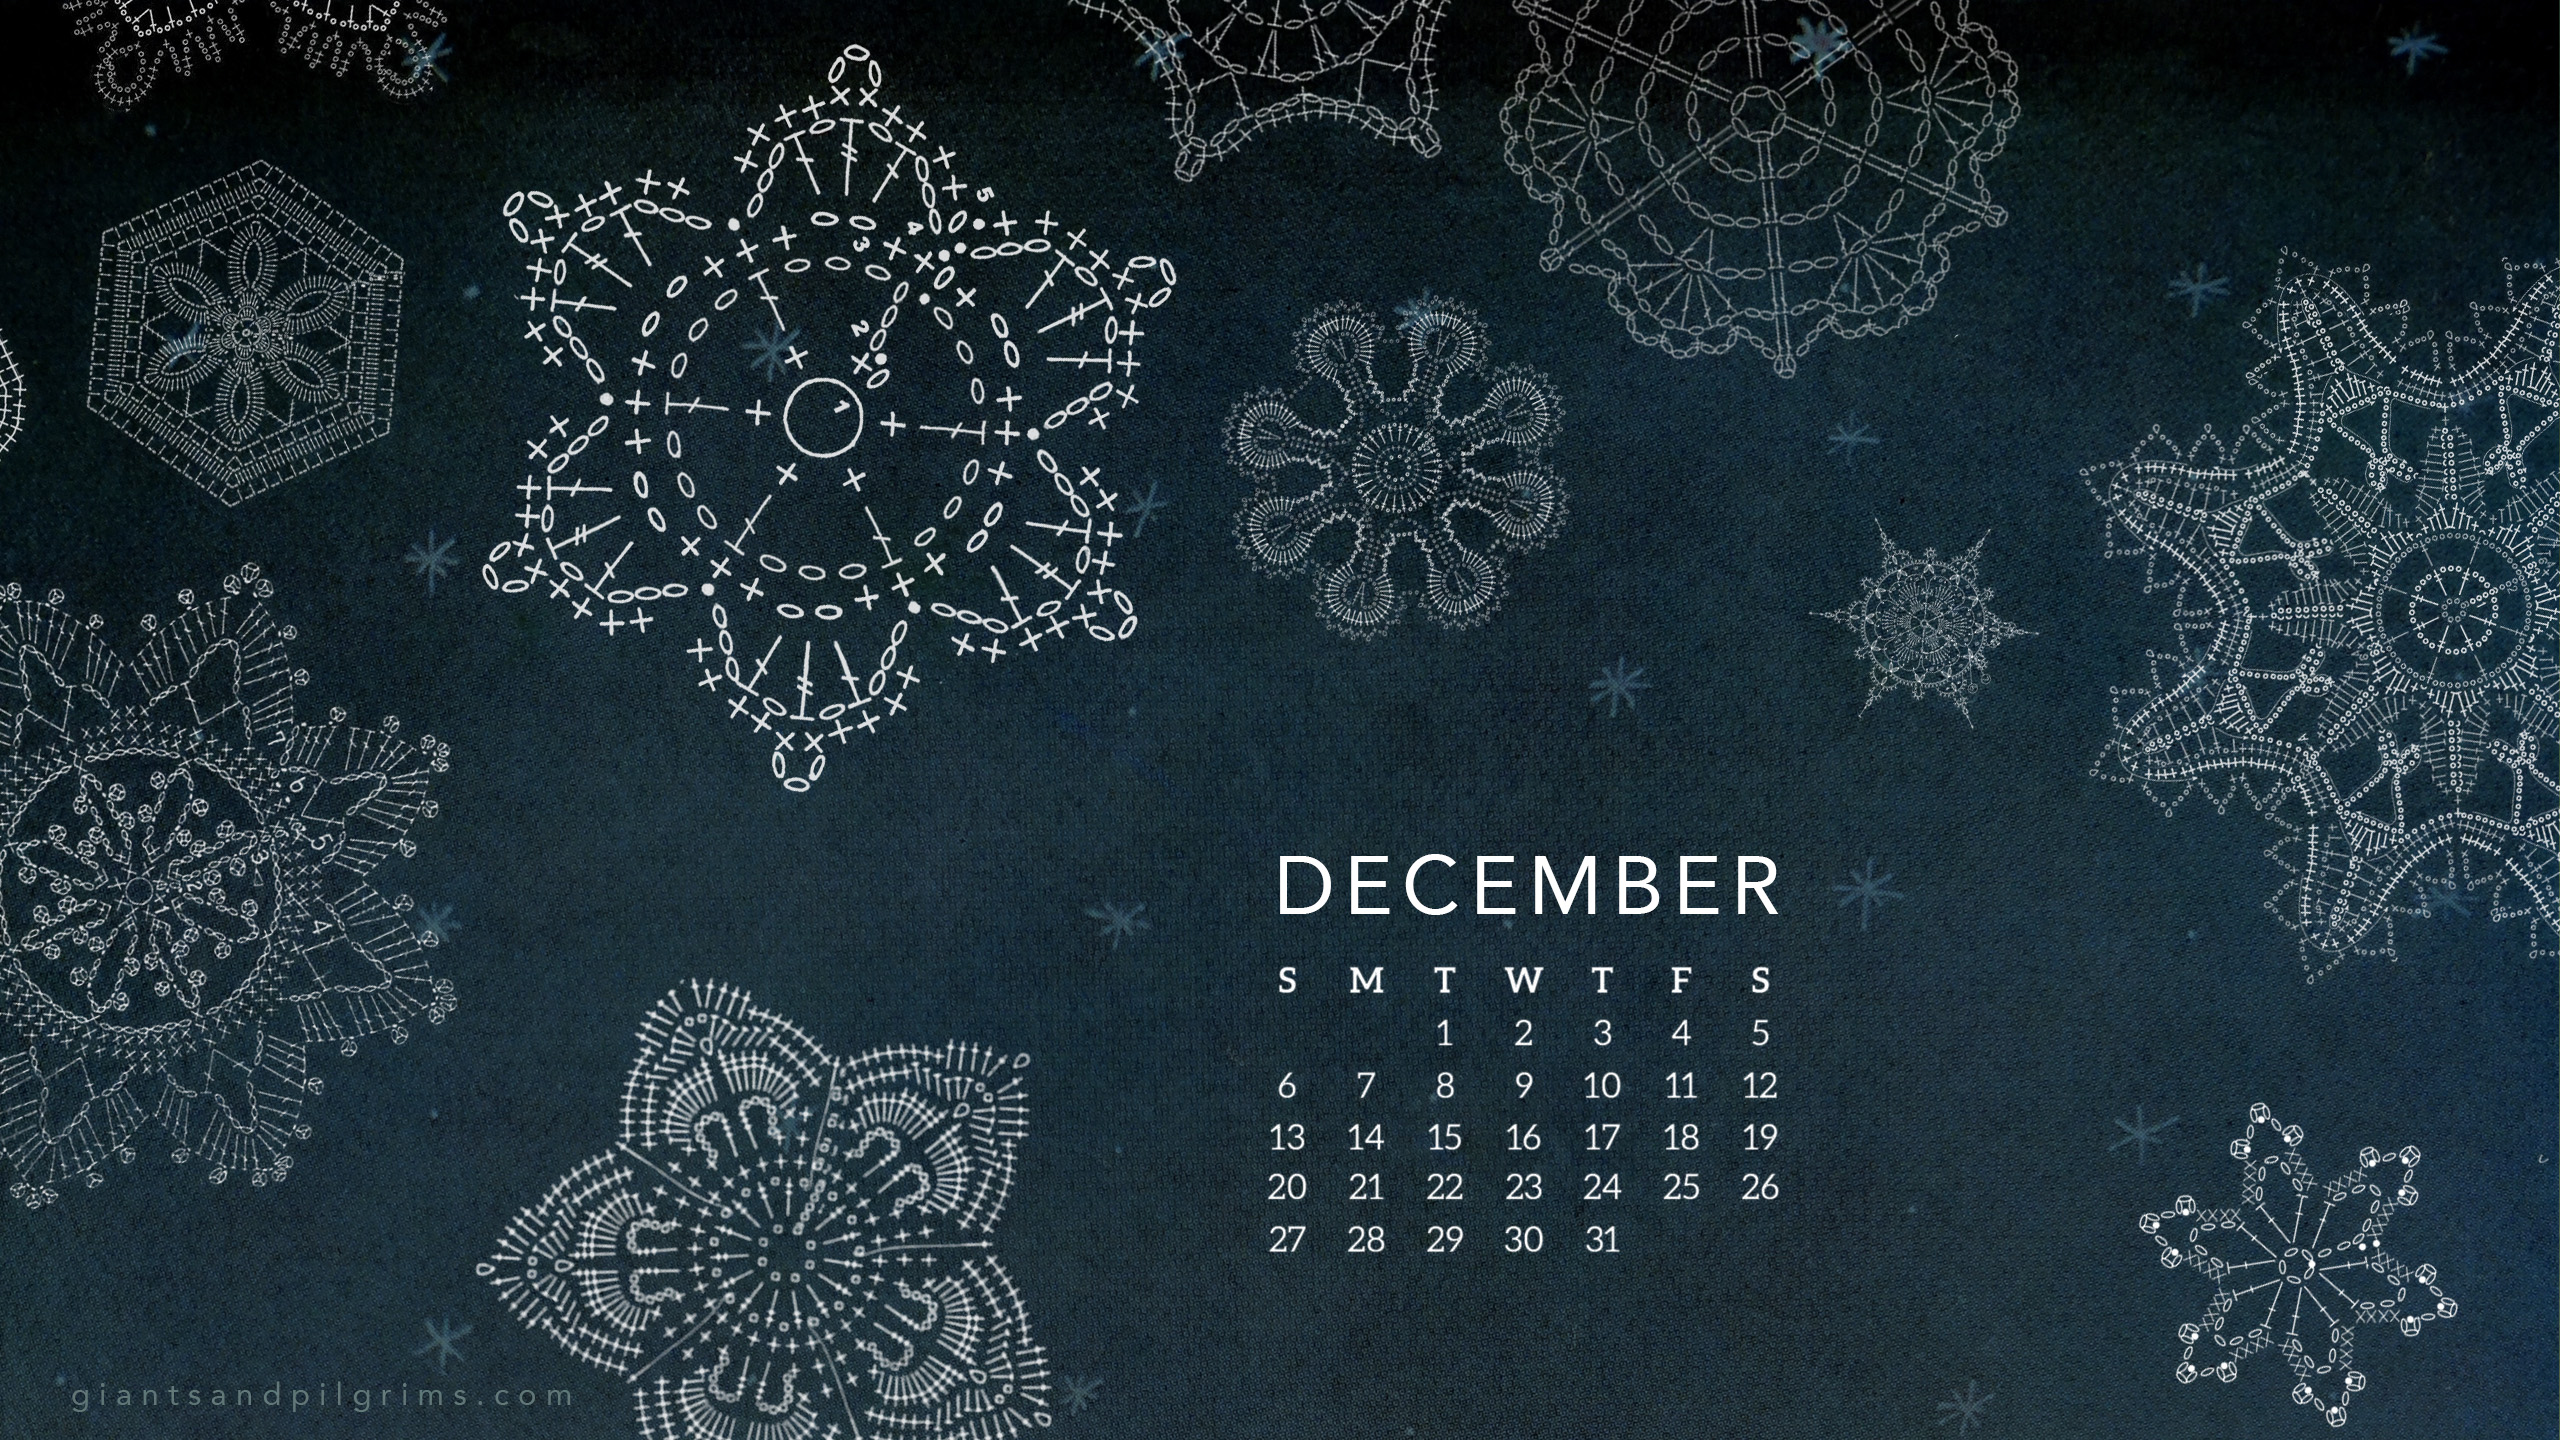 December 2017 calendar wallpaper